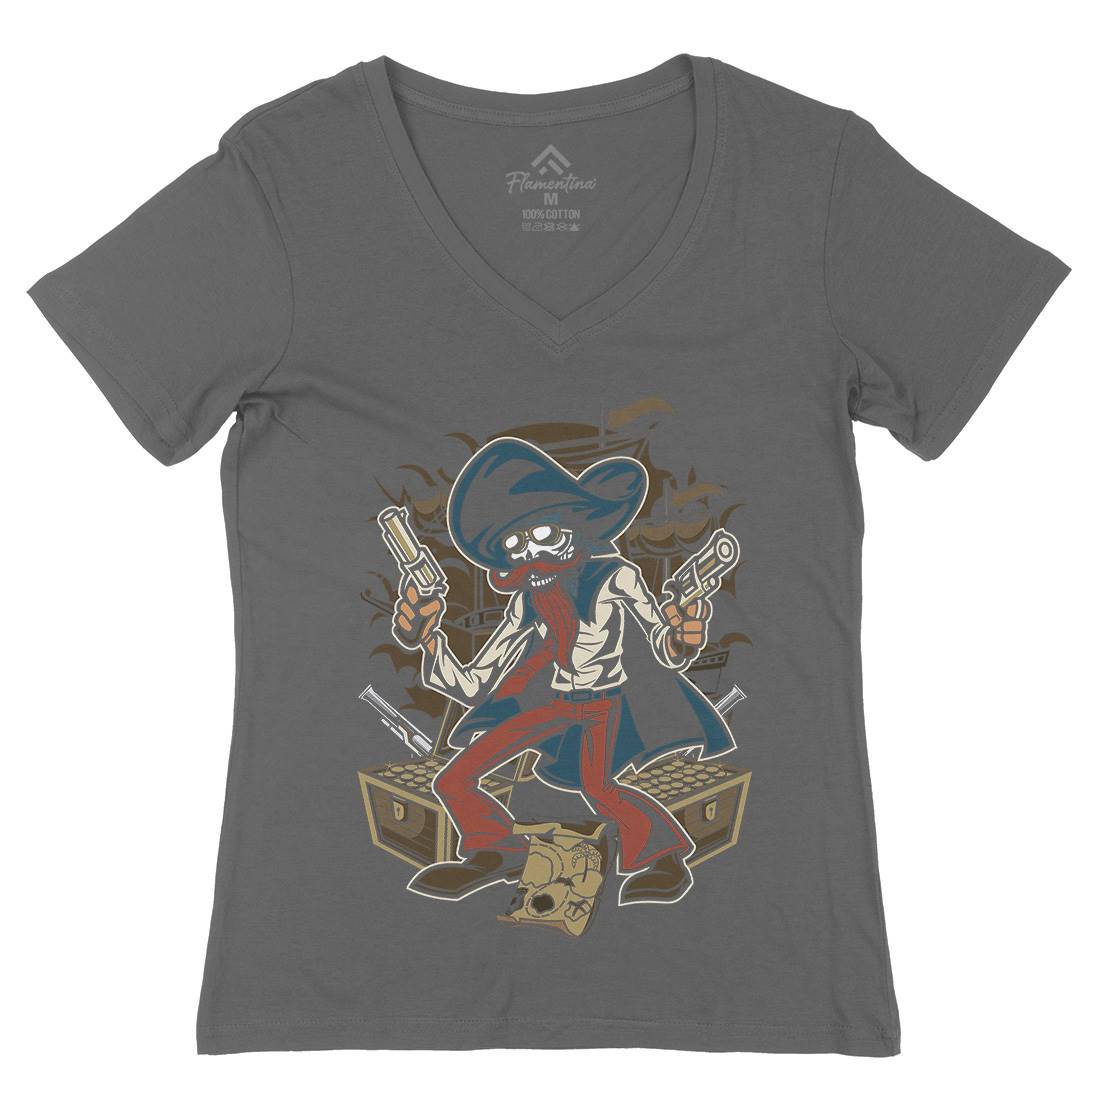 Pirate Treasure Womens Organic V-Neck T-Shirt Navy C420